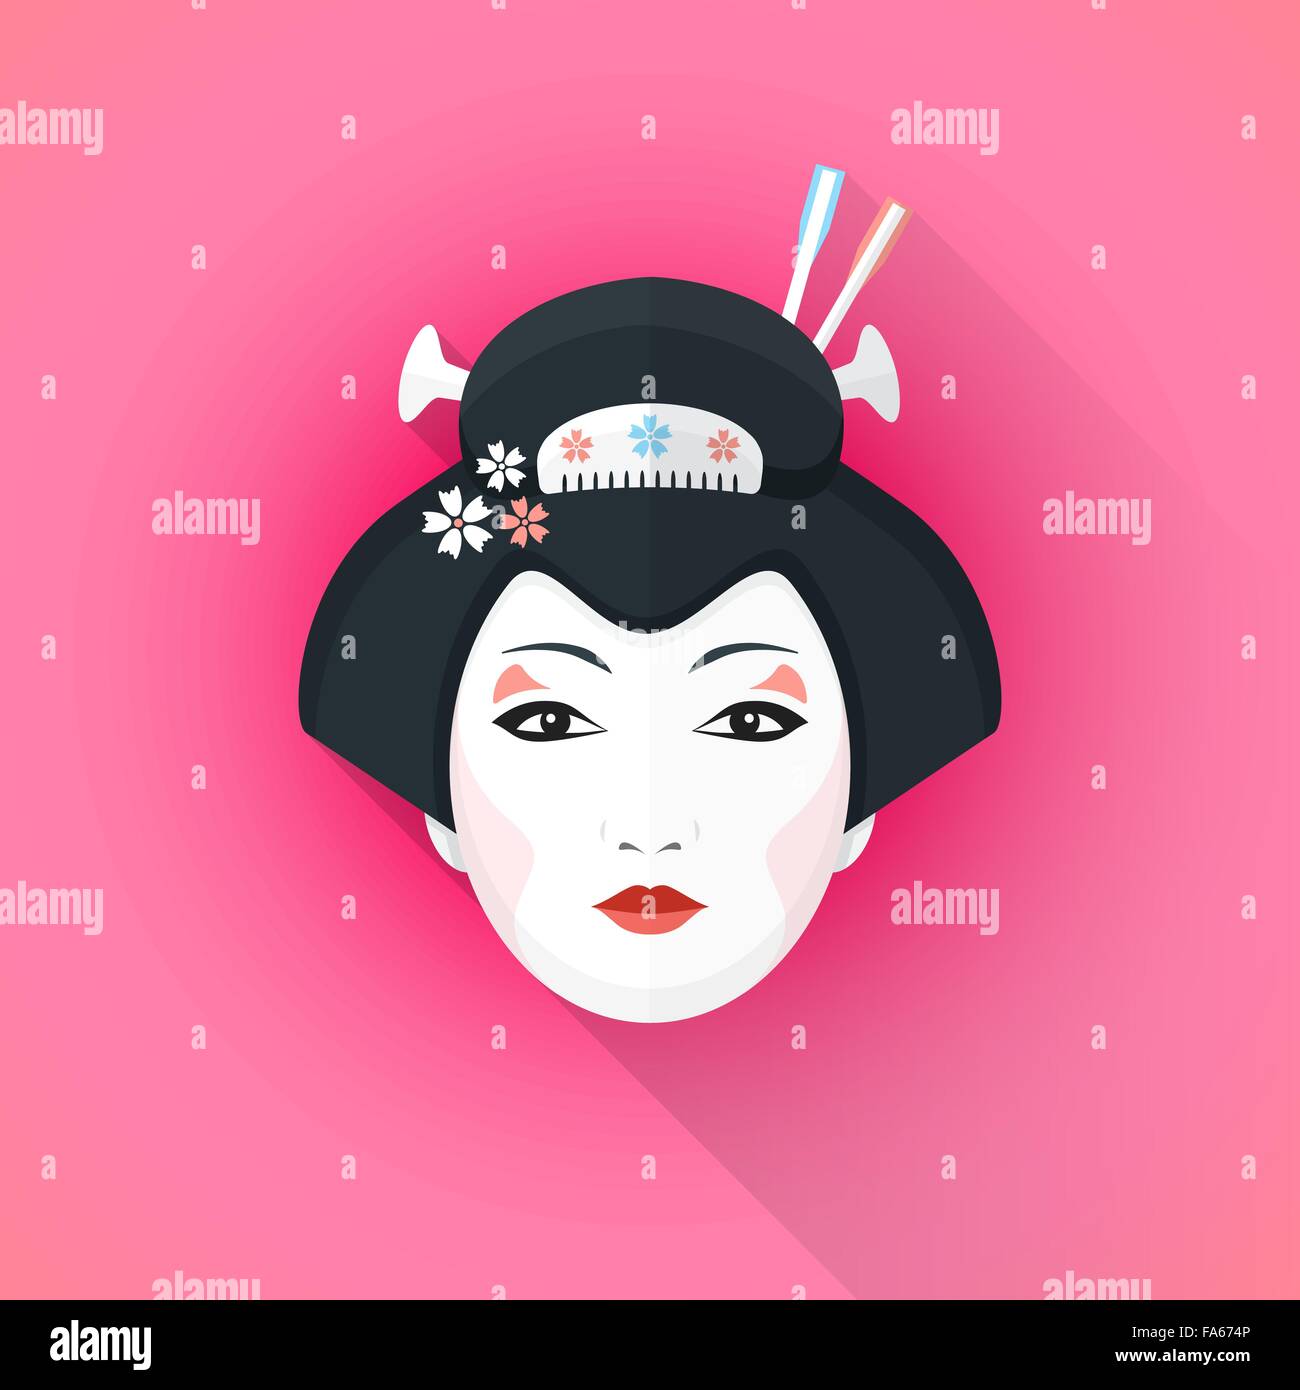 Télévision couleur vector design attrayant geisha visage avec des épingles à cheveux noir avec ombre illustration isolé sur rose retour Illustration de Vecteur